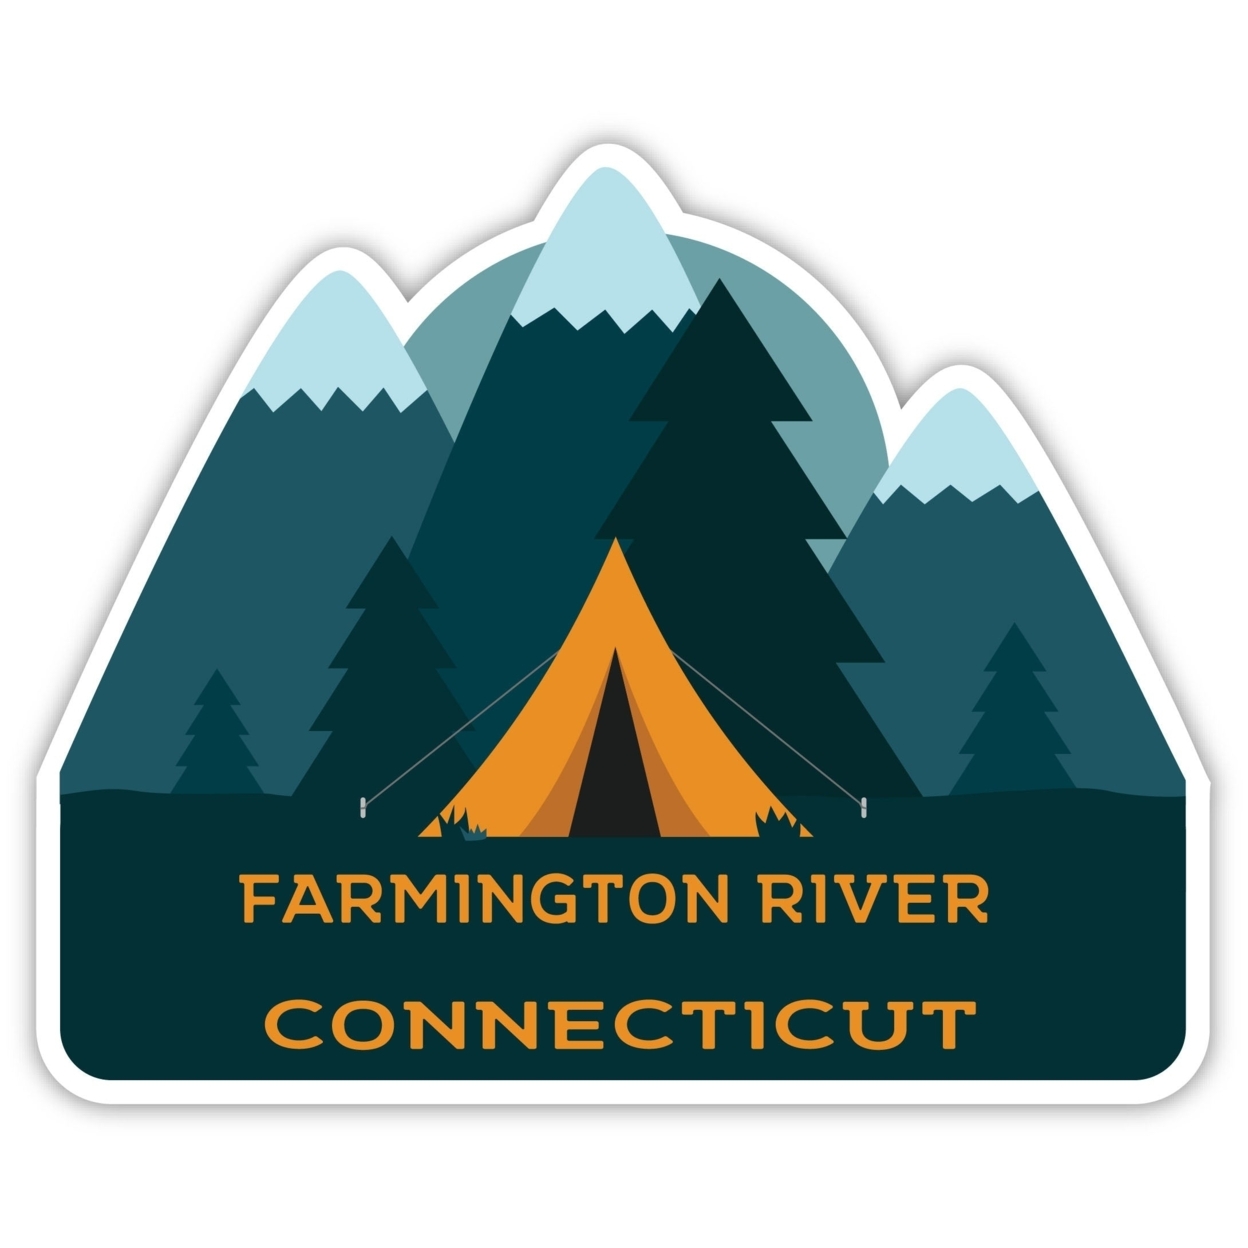 Farmington River Connecticut Souvenir Decorative Stickers (Choose Theme And Size) - Single Unit, 12-Inch, Tent